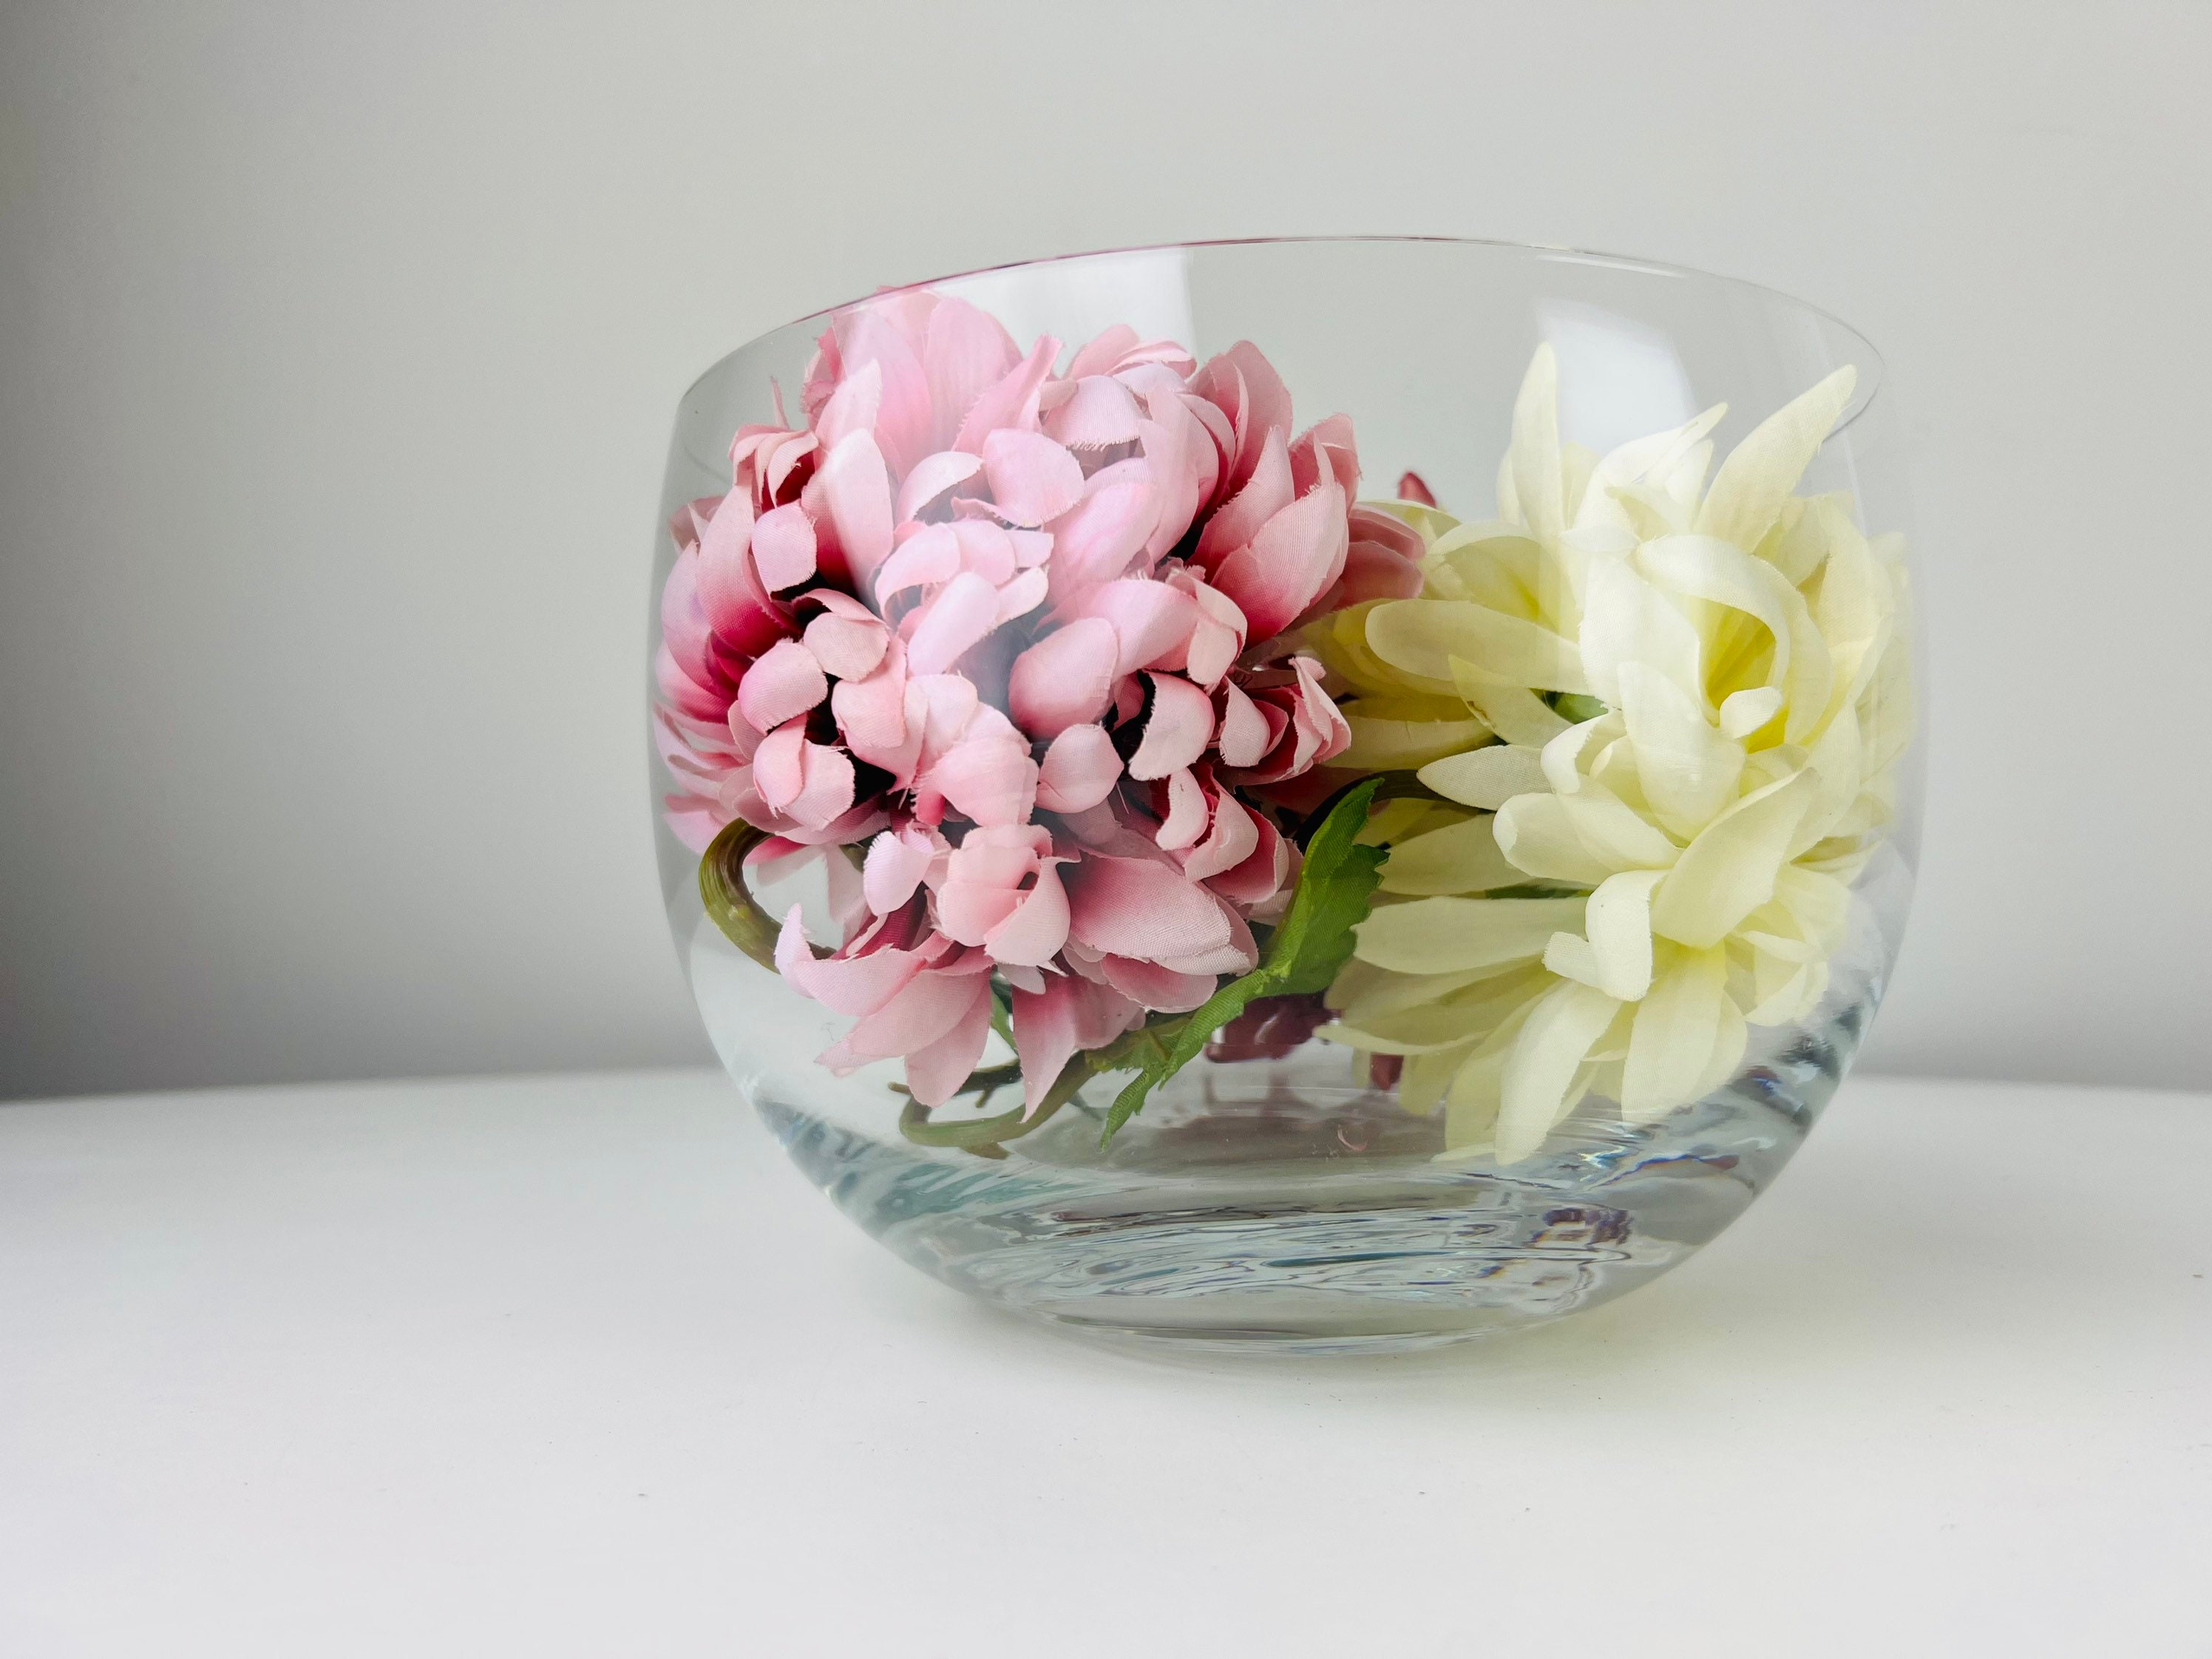 FLOWER BOWL VASE, Ikebana Flower Bowl, Dried Flower Arrangement